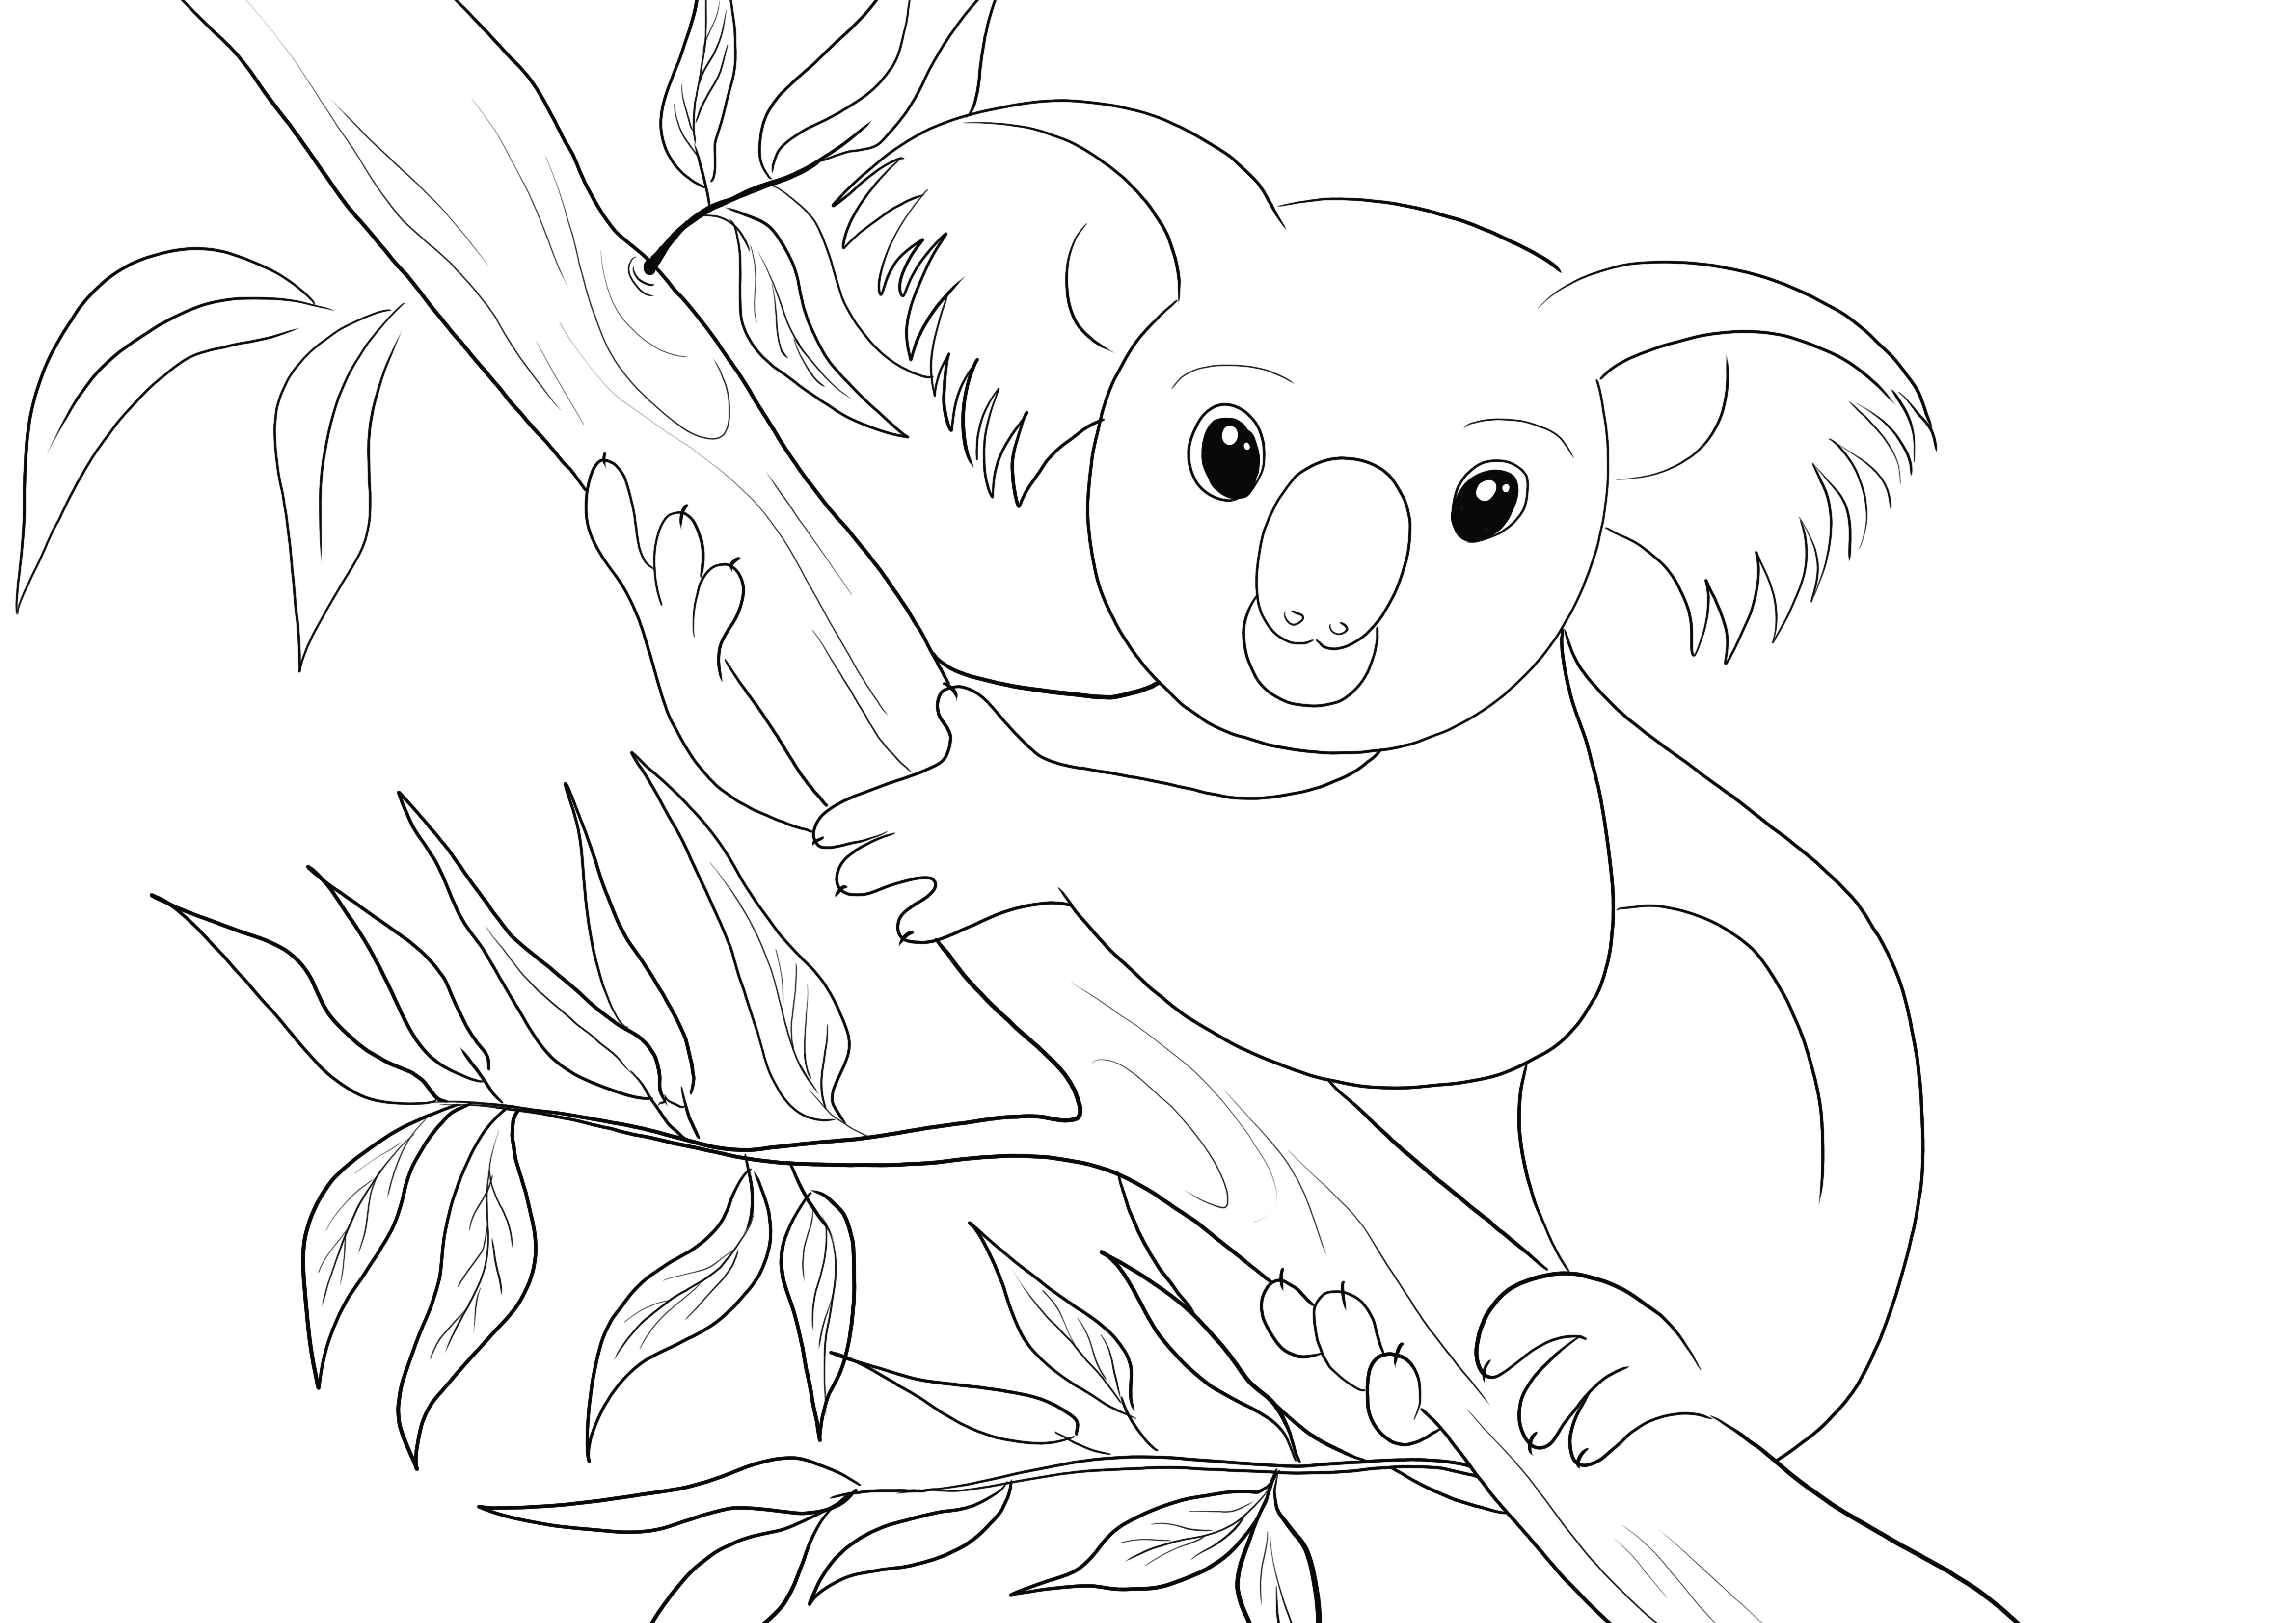 Söpö Koala väritysarkki ilmaiseksi tulostettavaksi ja ladattavaksi